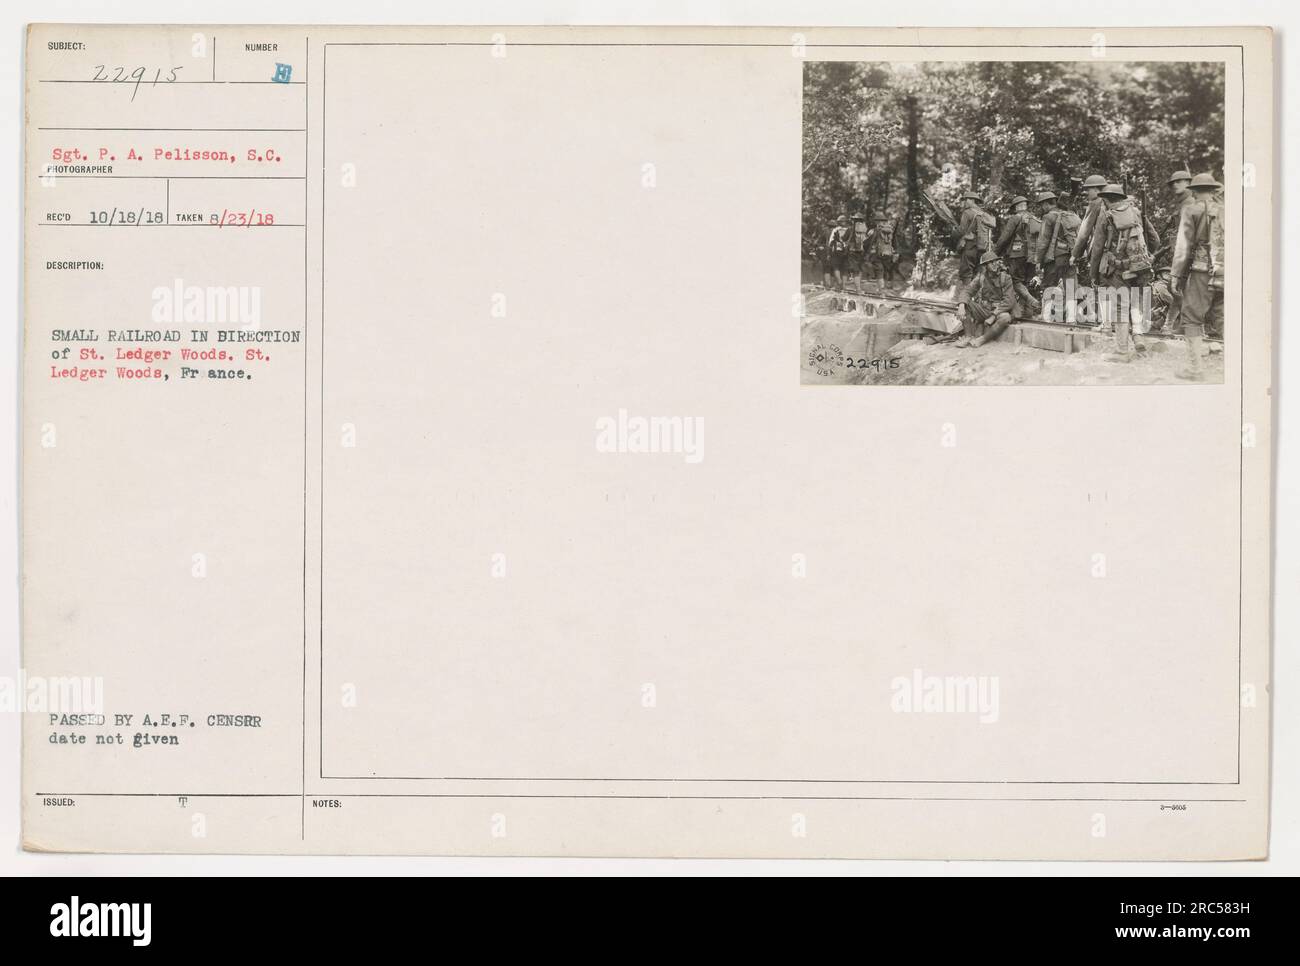 Sgt. P. A. Pelisson vom Signalkorps ist auf diesem Foto zu sehen, das am 23. August 1918 aufgenommen wurde. Das Bild zeigt eine kleine Eisenbahn in Richtung St. Ledger Woods in Frankreich. Das Foto wurde von einem unbekannten Fotografen aufgenommen und vom A.E.F.-Zensor genehmigt. Zeitstempel und zusätzliche Anmerkungen wurden ebenfalls bereitgestellt. Stockfoto